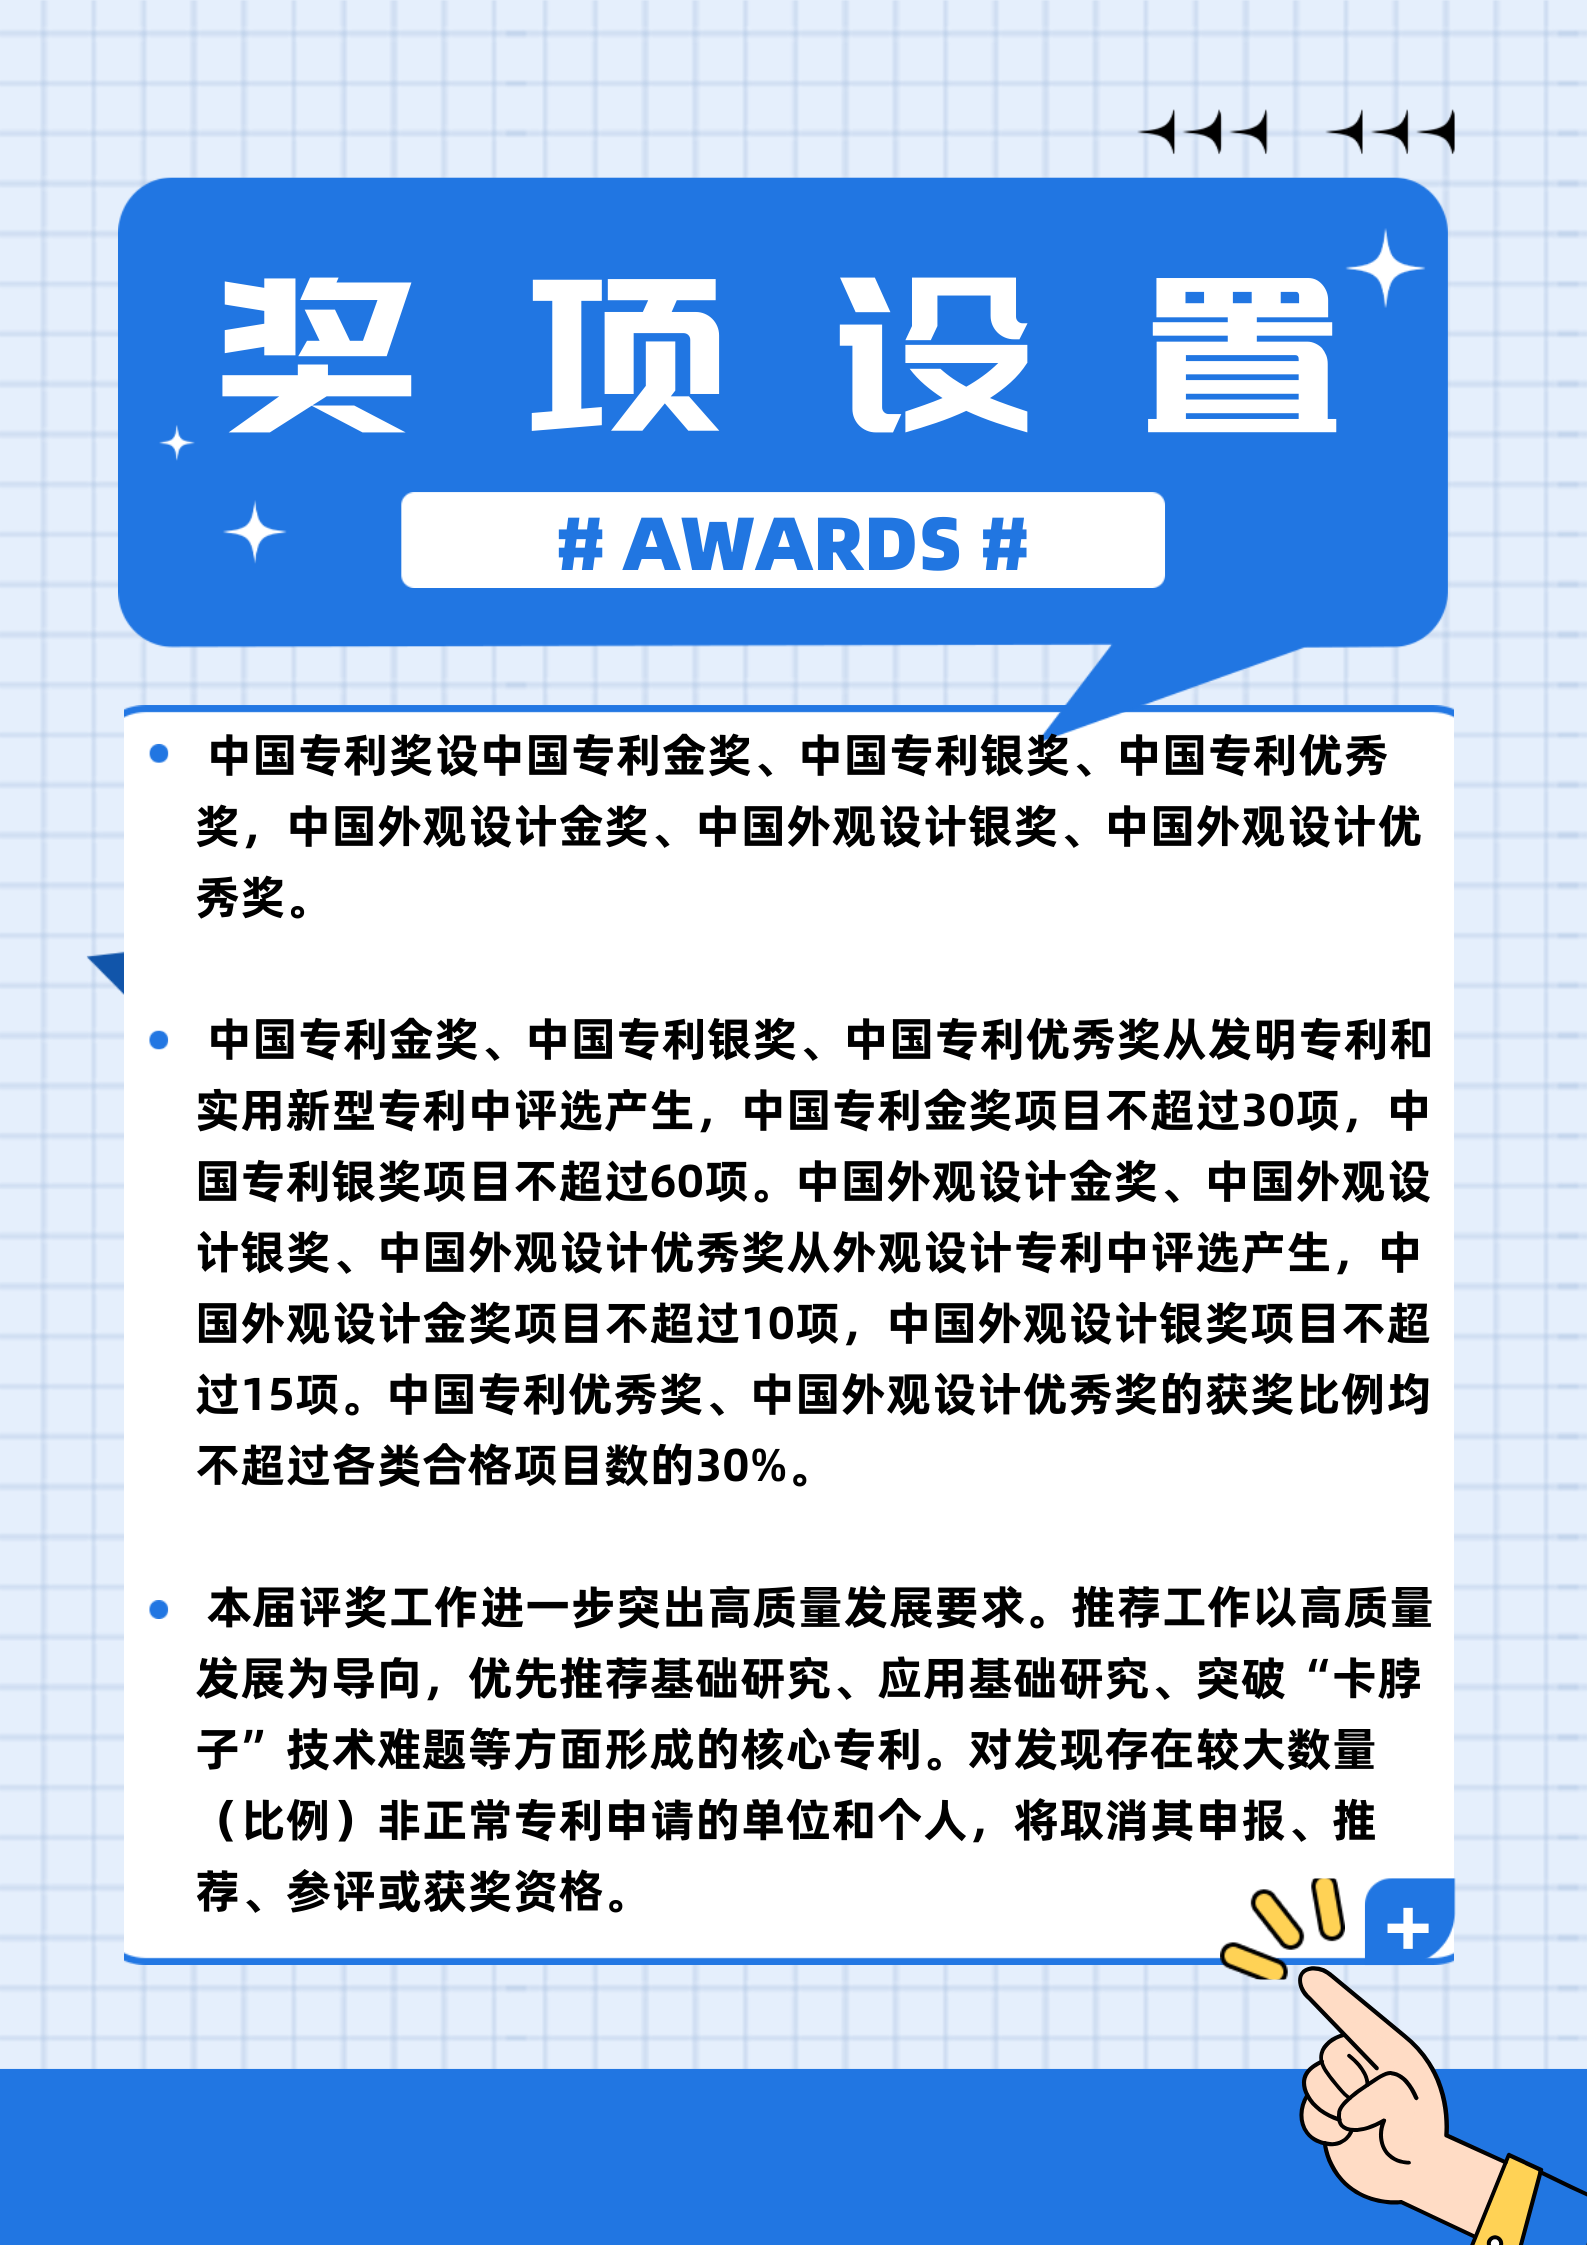 重要|北京地区中国专利奖申报推荐工作通知